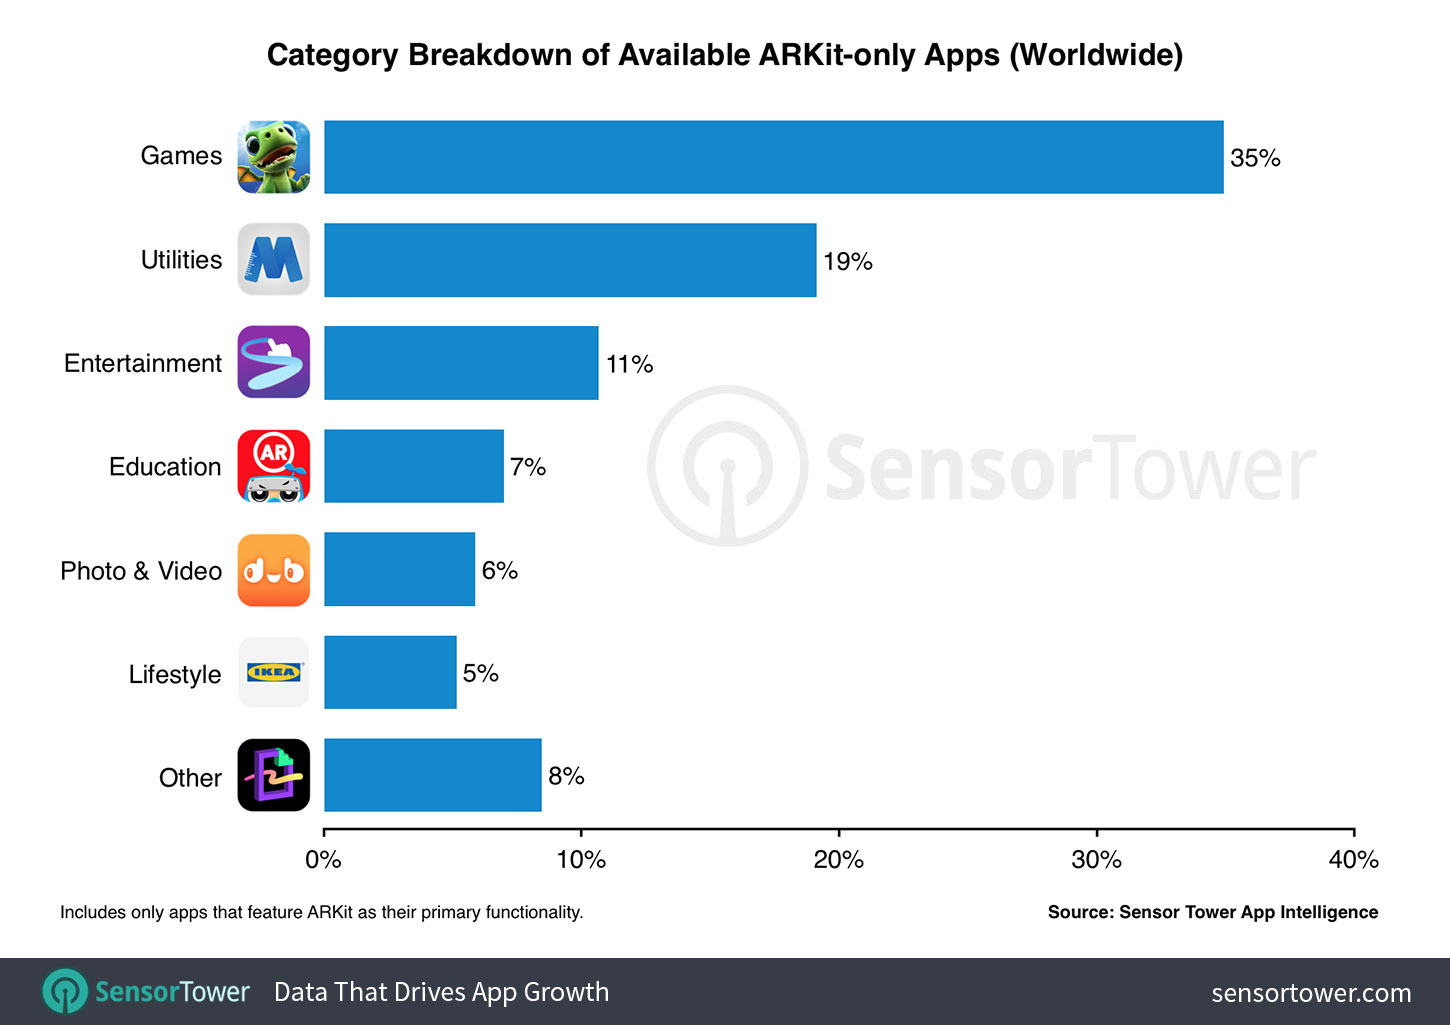 Breakdown of ARKit apps by category